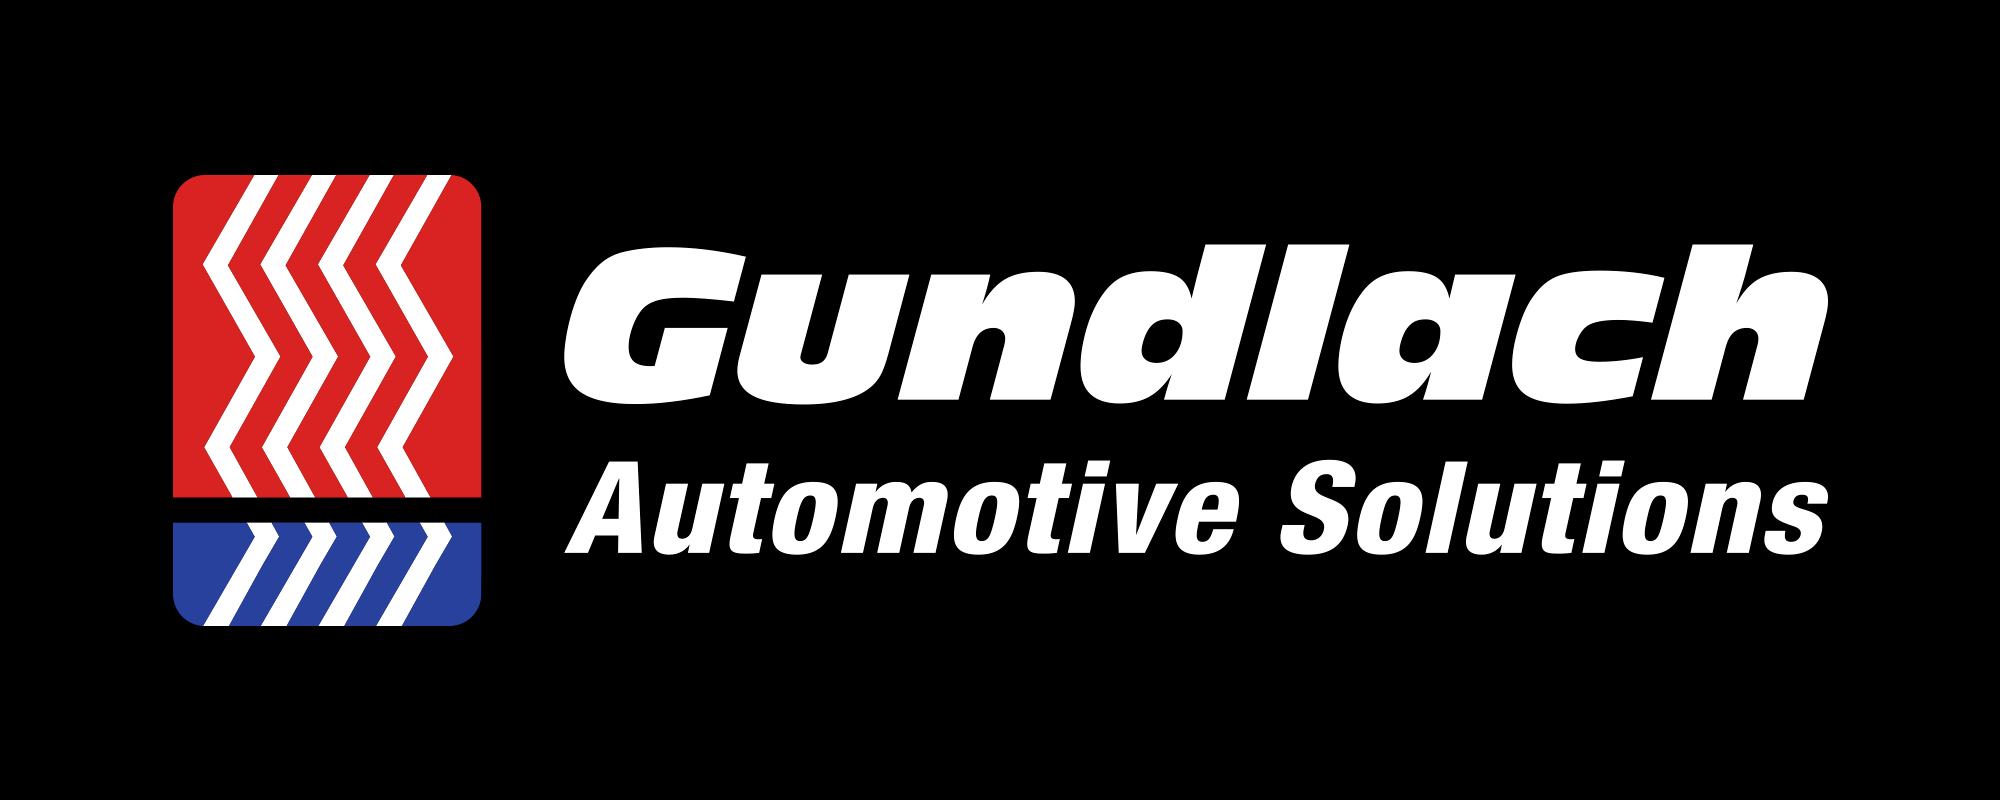 Gundlach-Automotive-Solutions.jpg